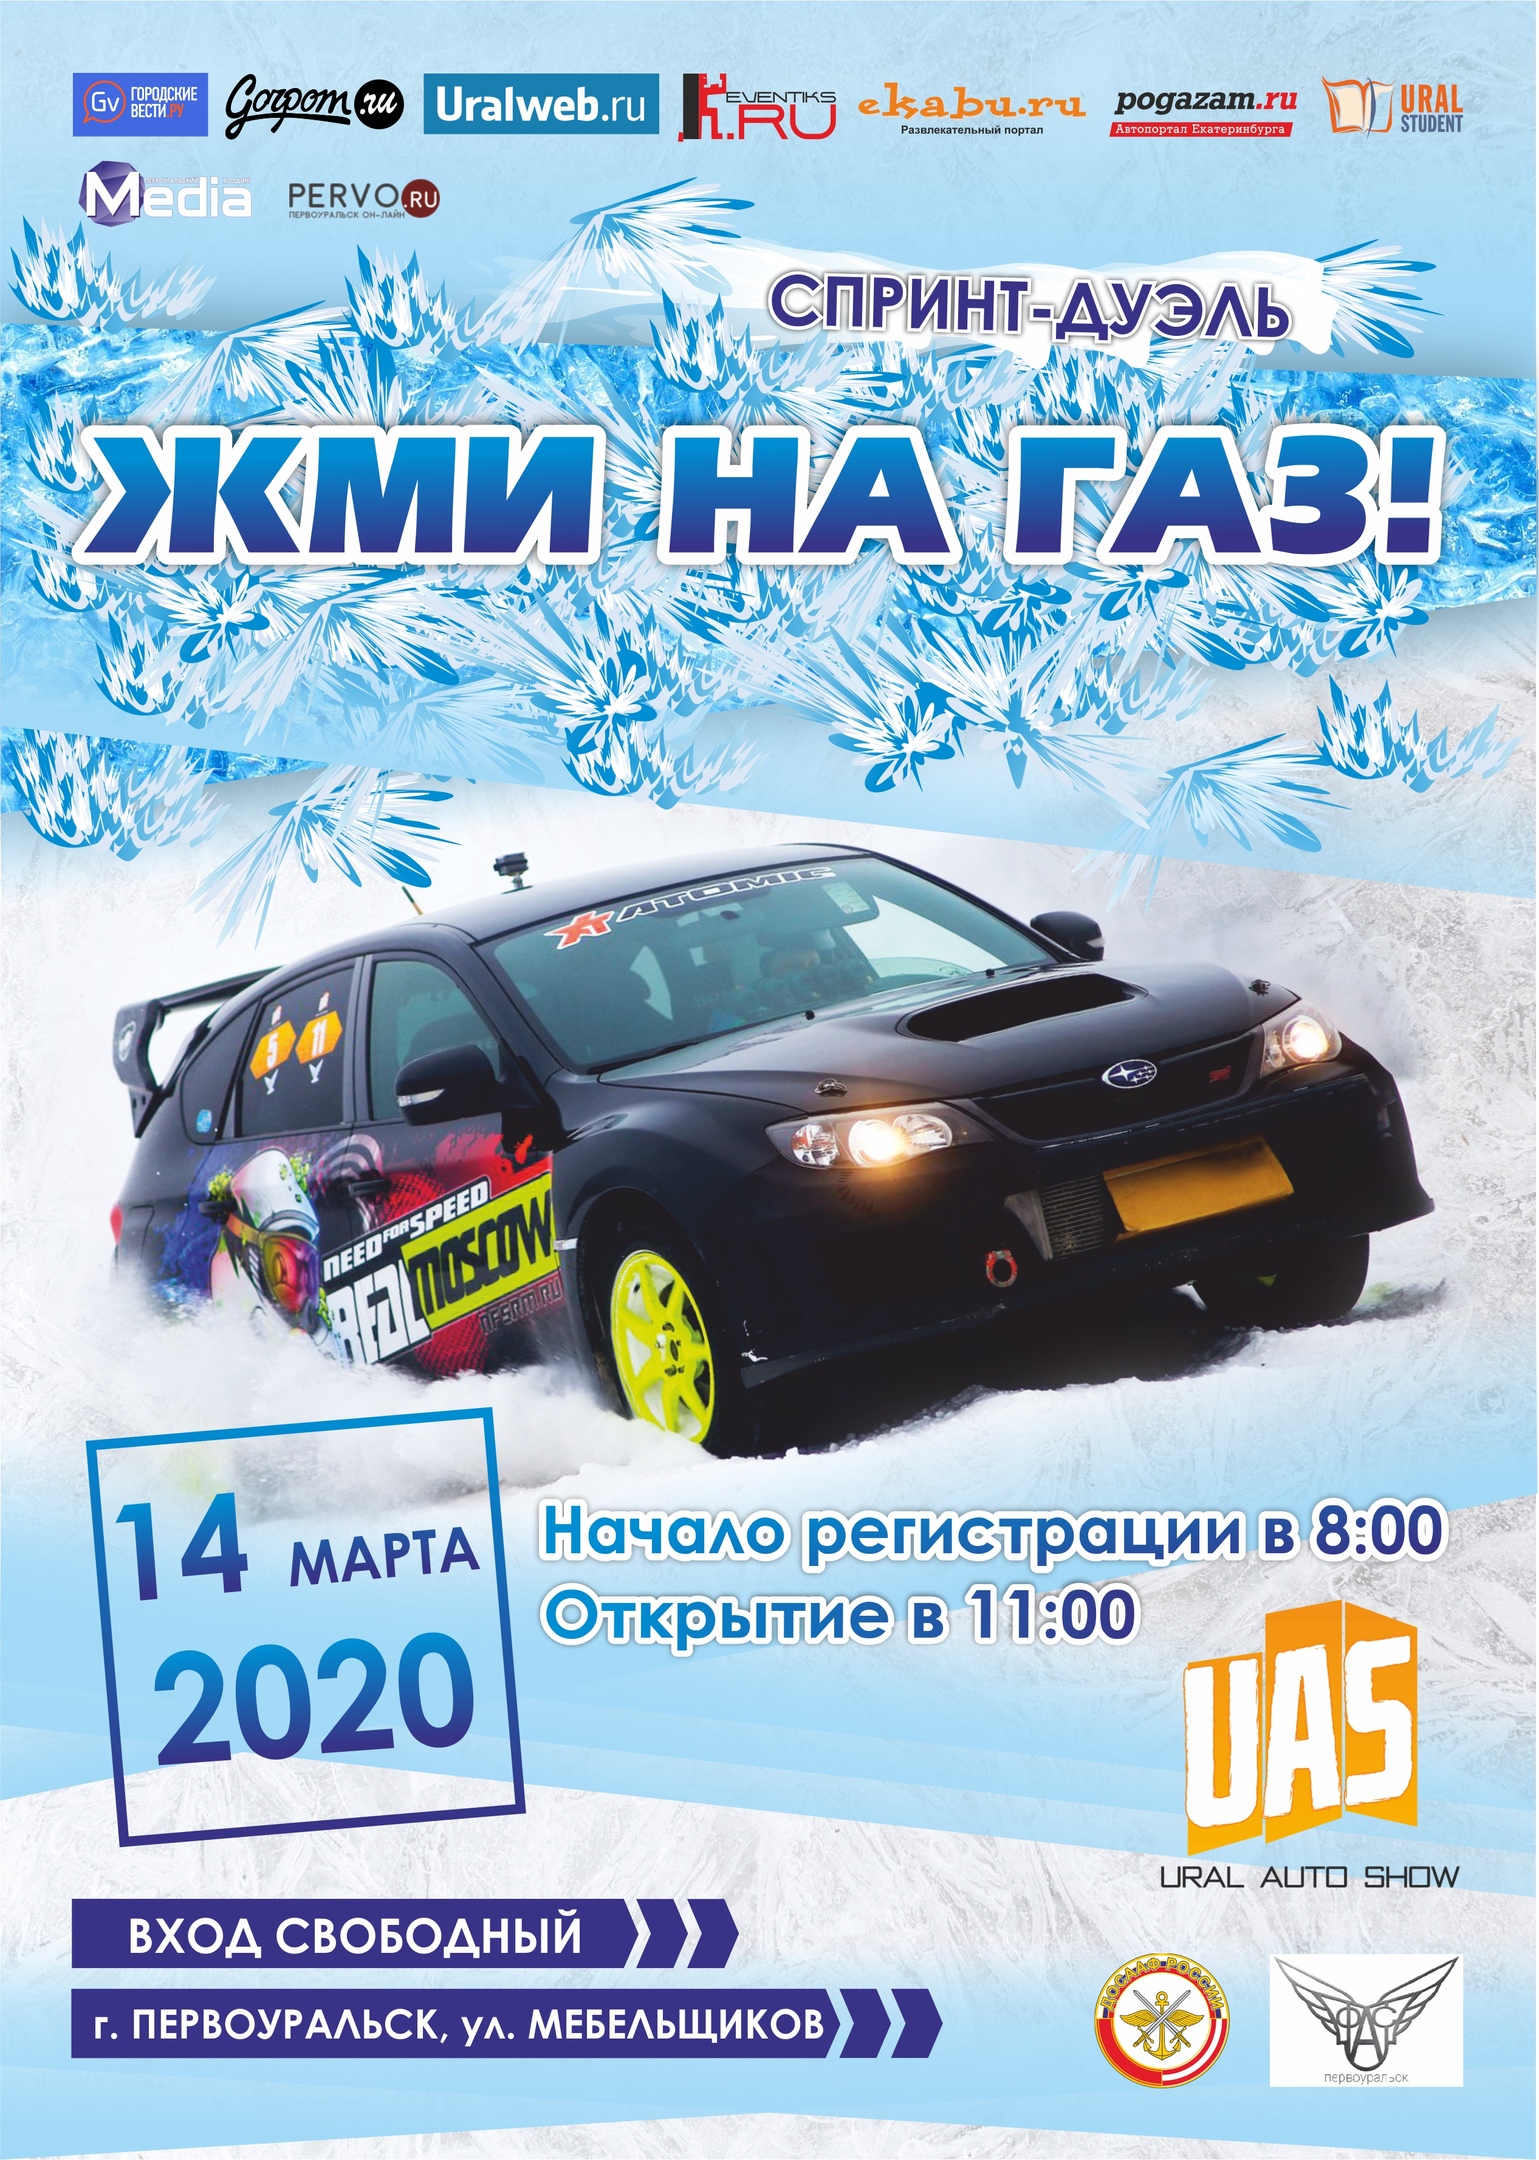 Первоуральск, встречай! 14 марта  на кроссовой трассе «Гора пильная»,  бампер к бамперу встретятся сильнейшие пилоты Свердловской области!